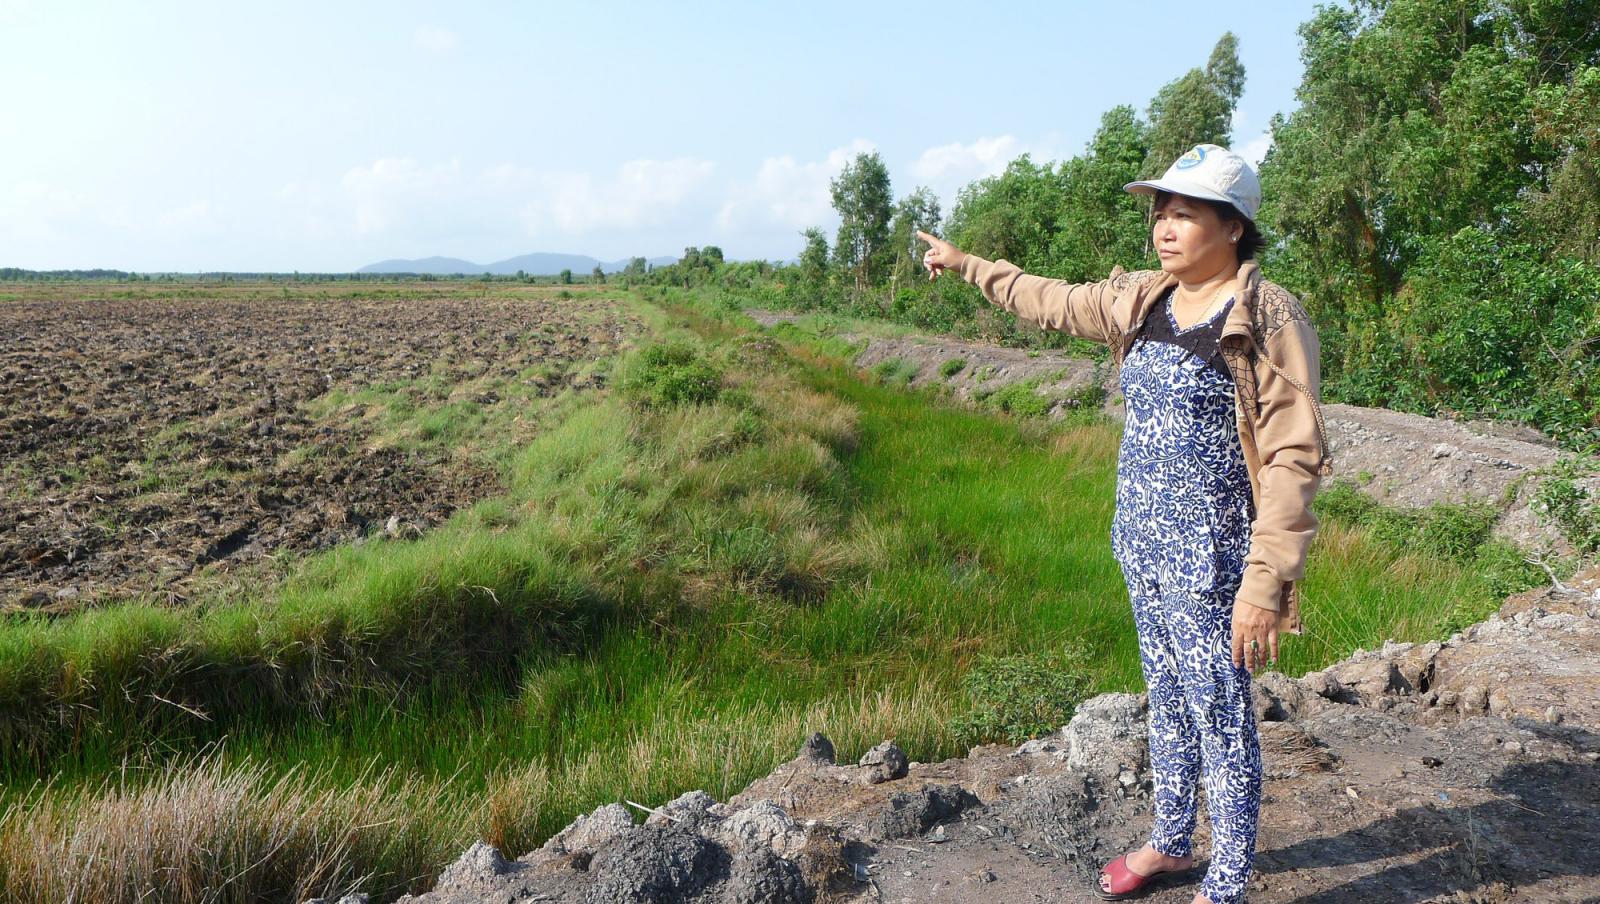 Hình ảnh một người phụ nữ luống tuổi đang đứng xem và chỉ tay về một khu đất trống 